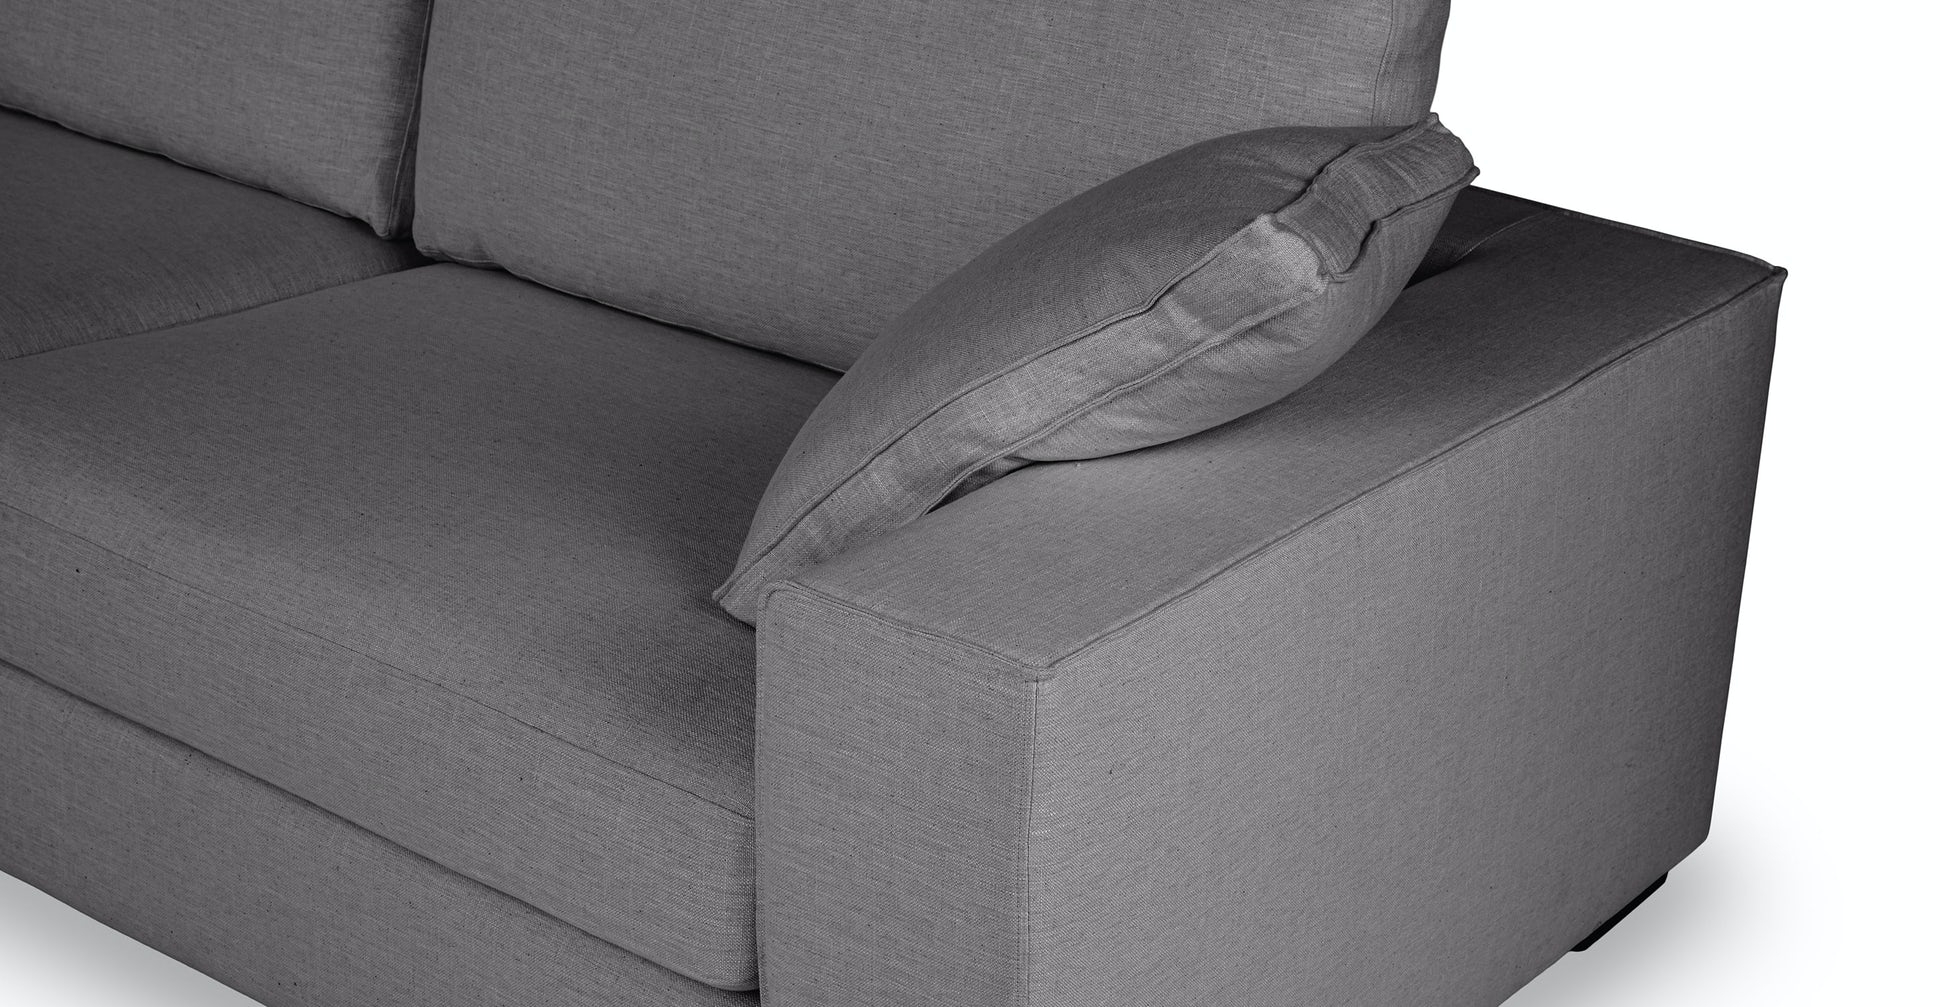 Sitka Sofa, Boreal Gray - Image 4